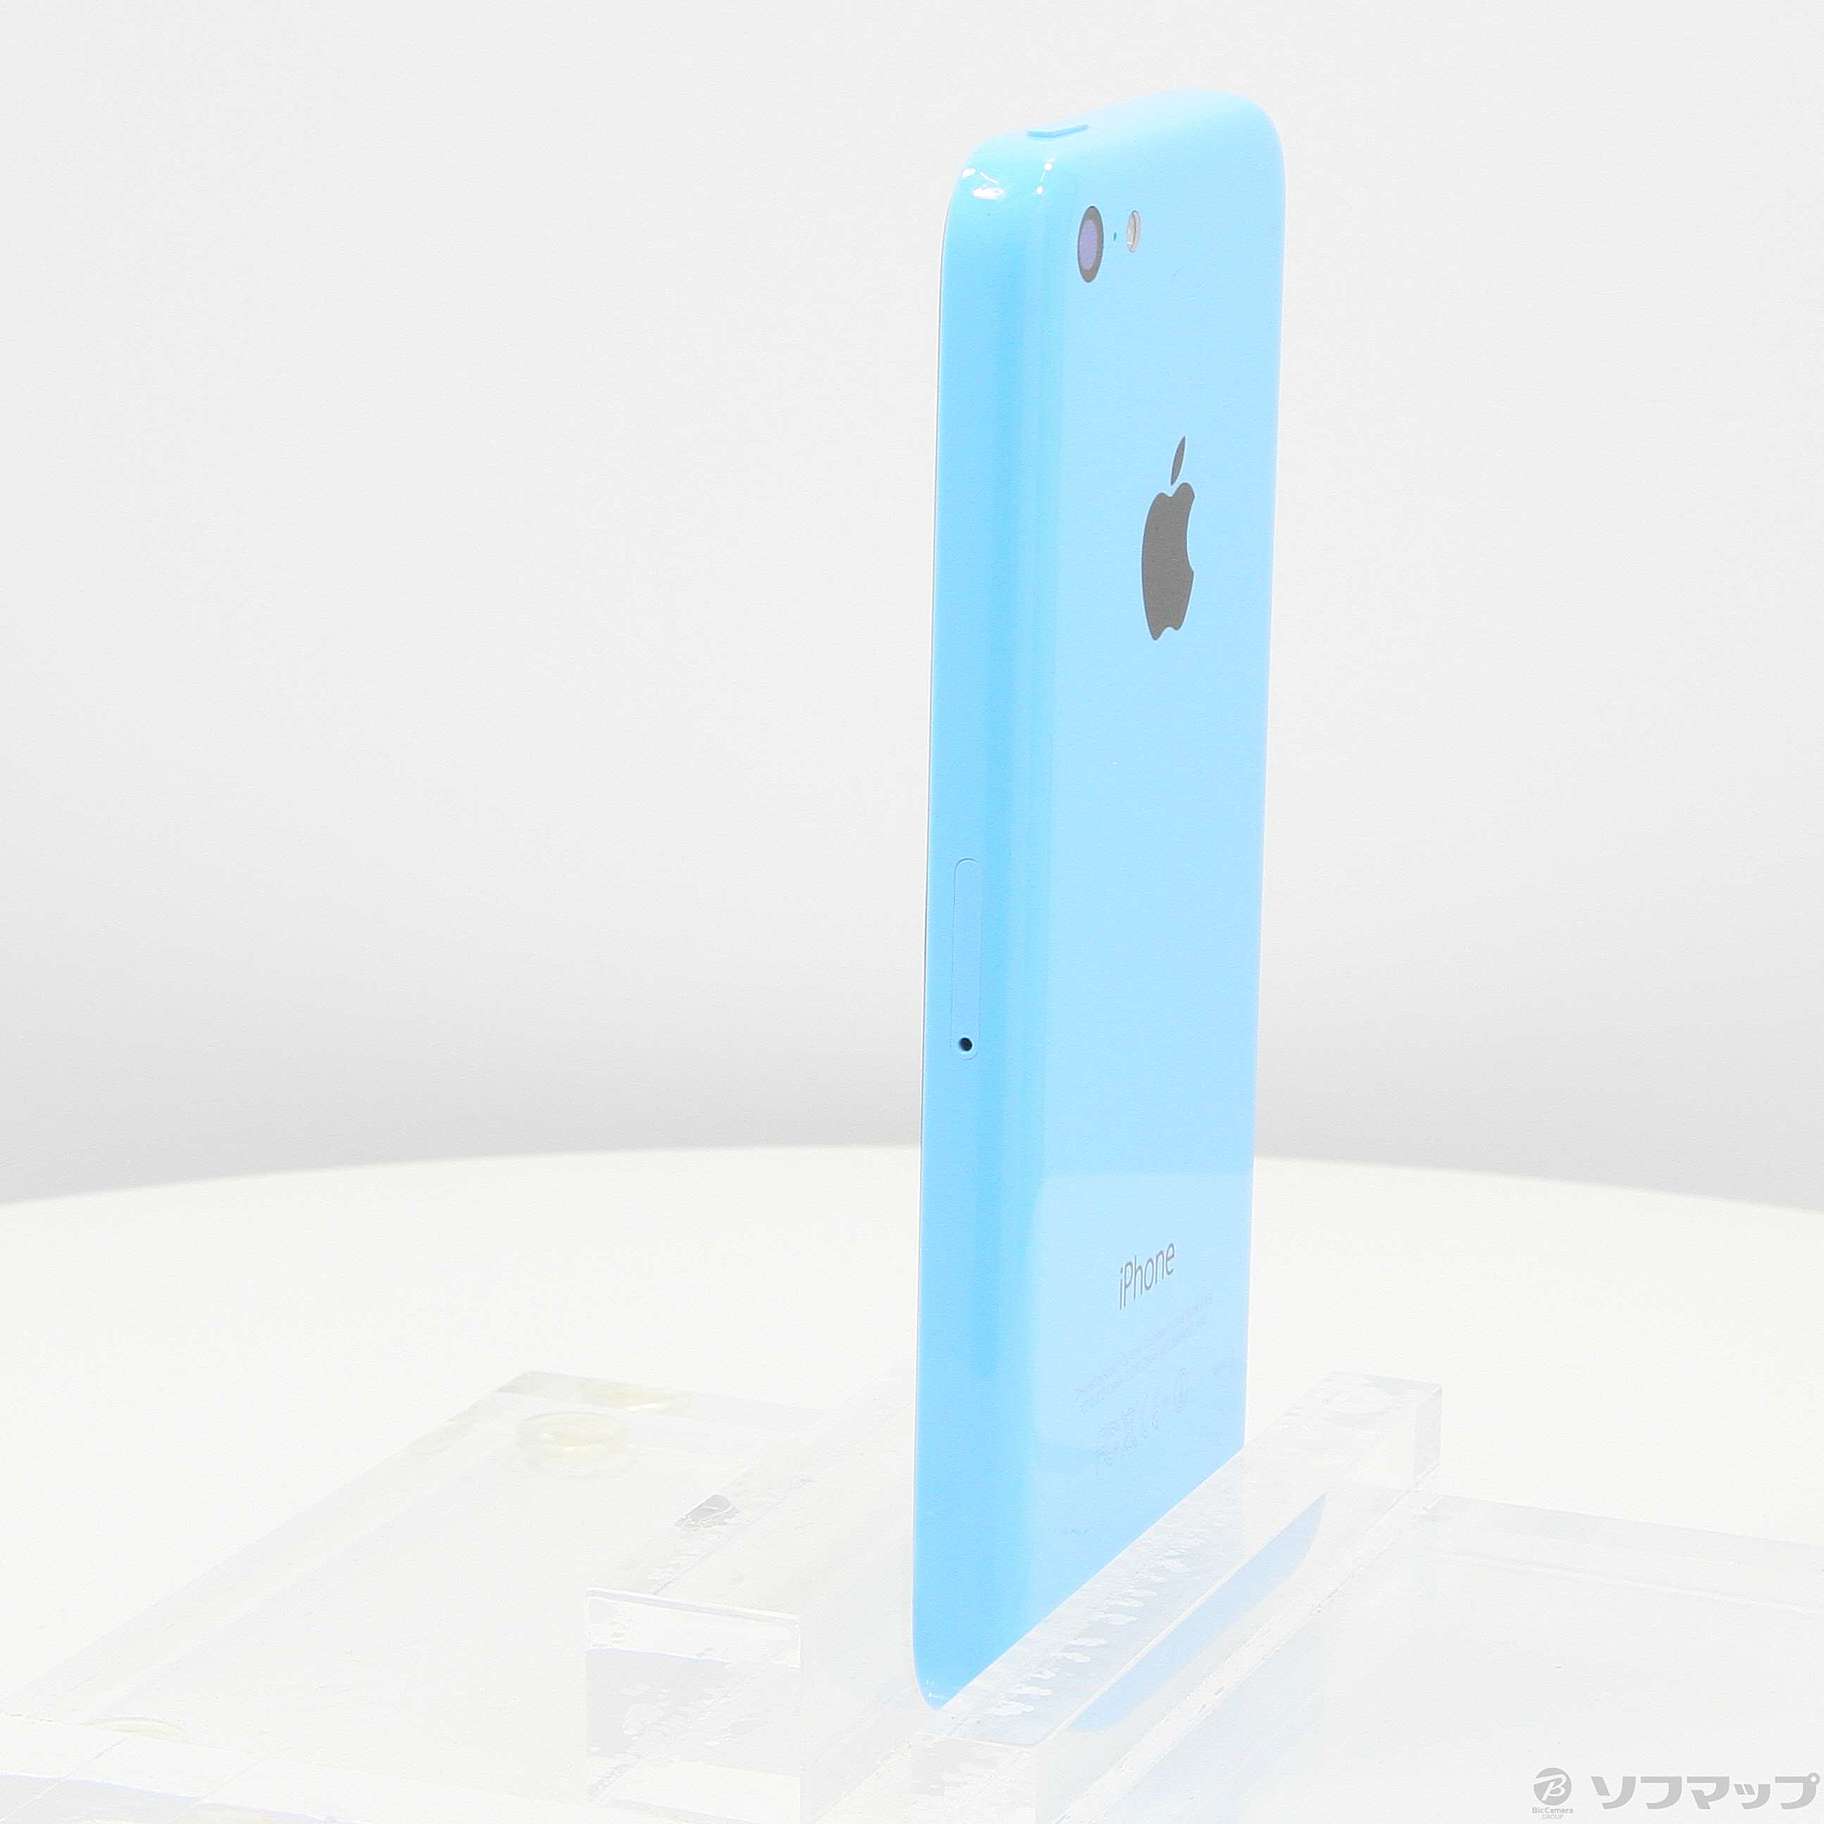 良品 au iPhone5c 32GB ブルー